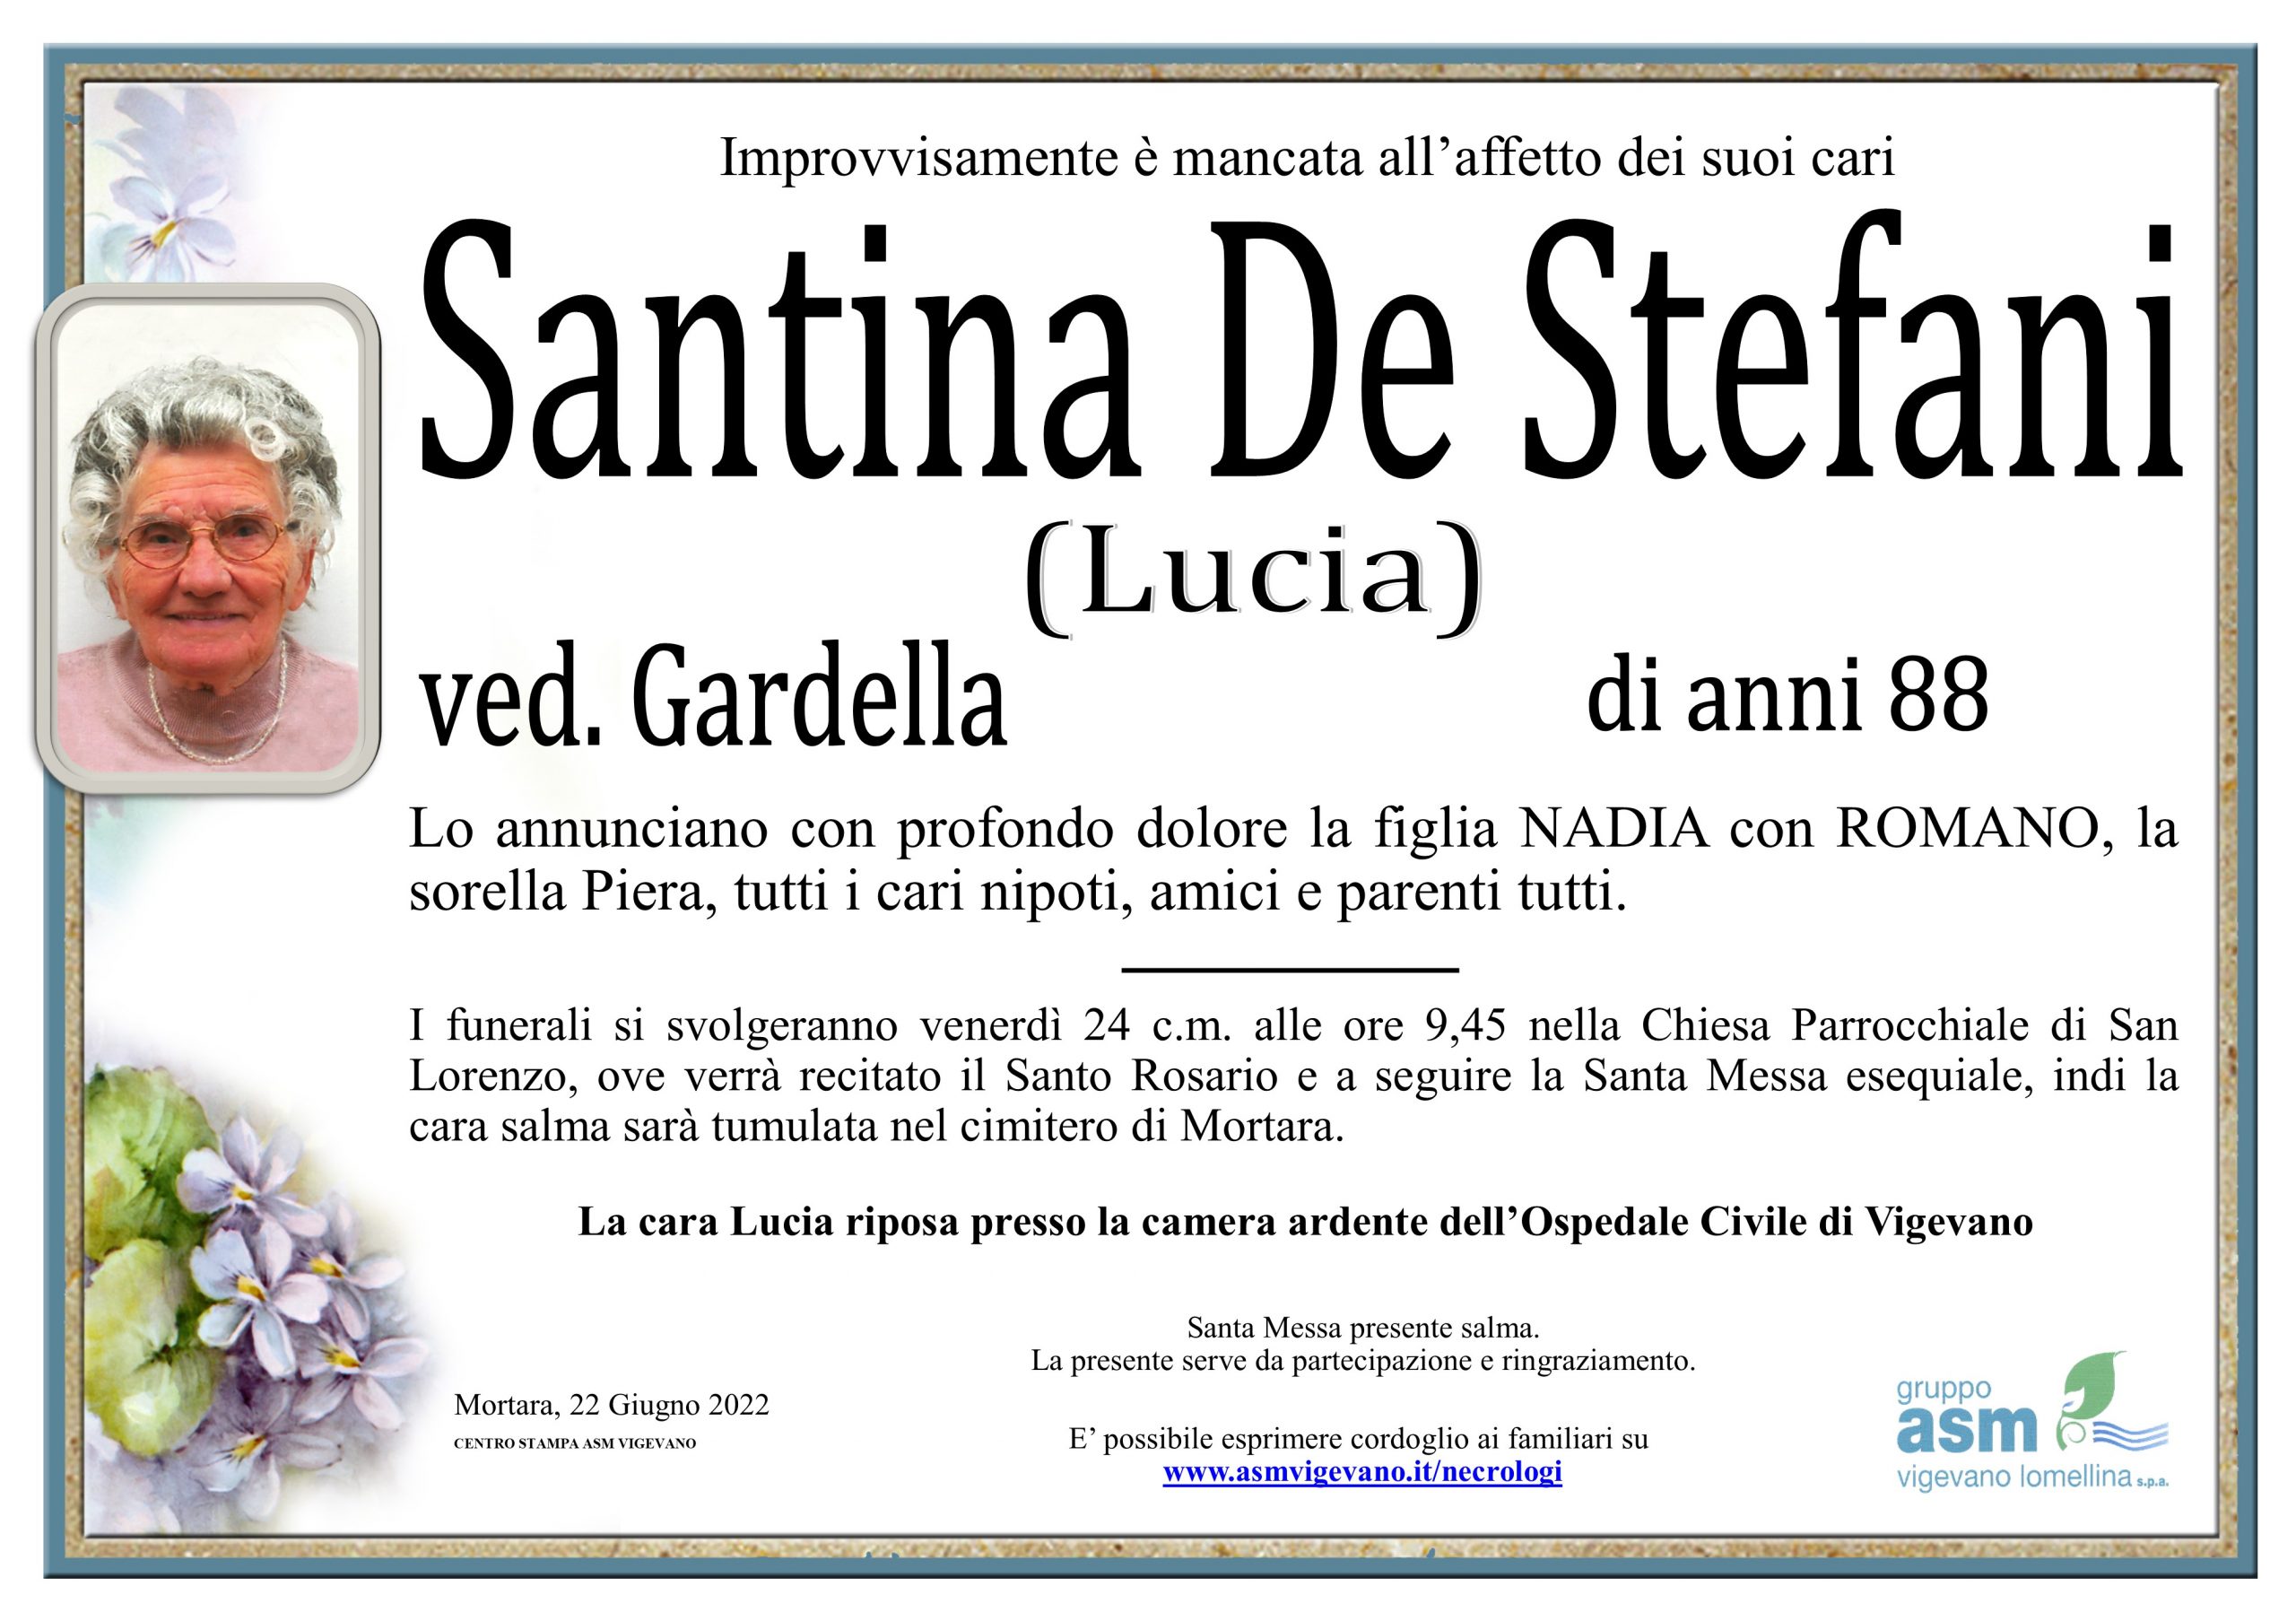 Santina De Stefani (Lucia)